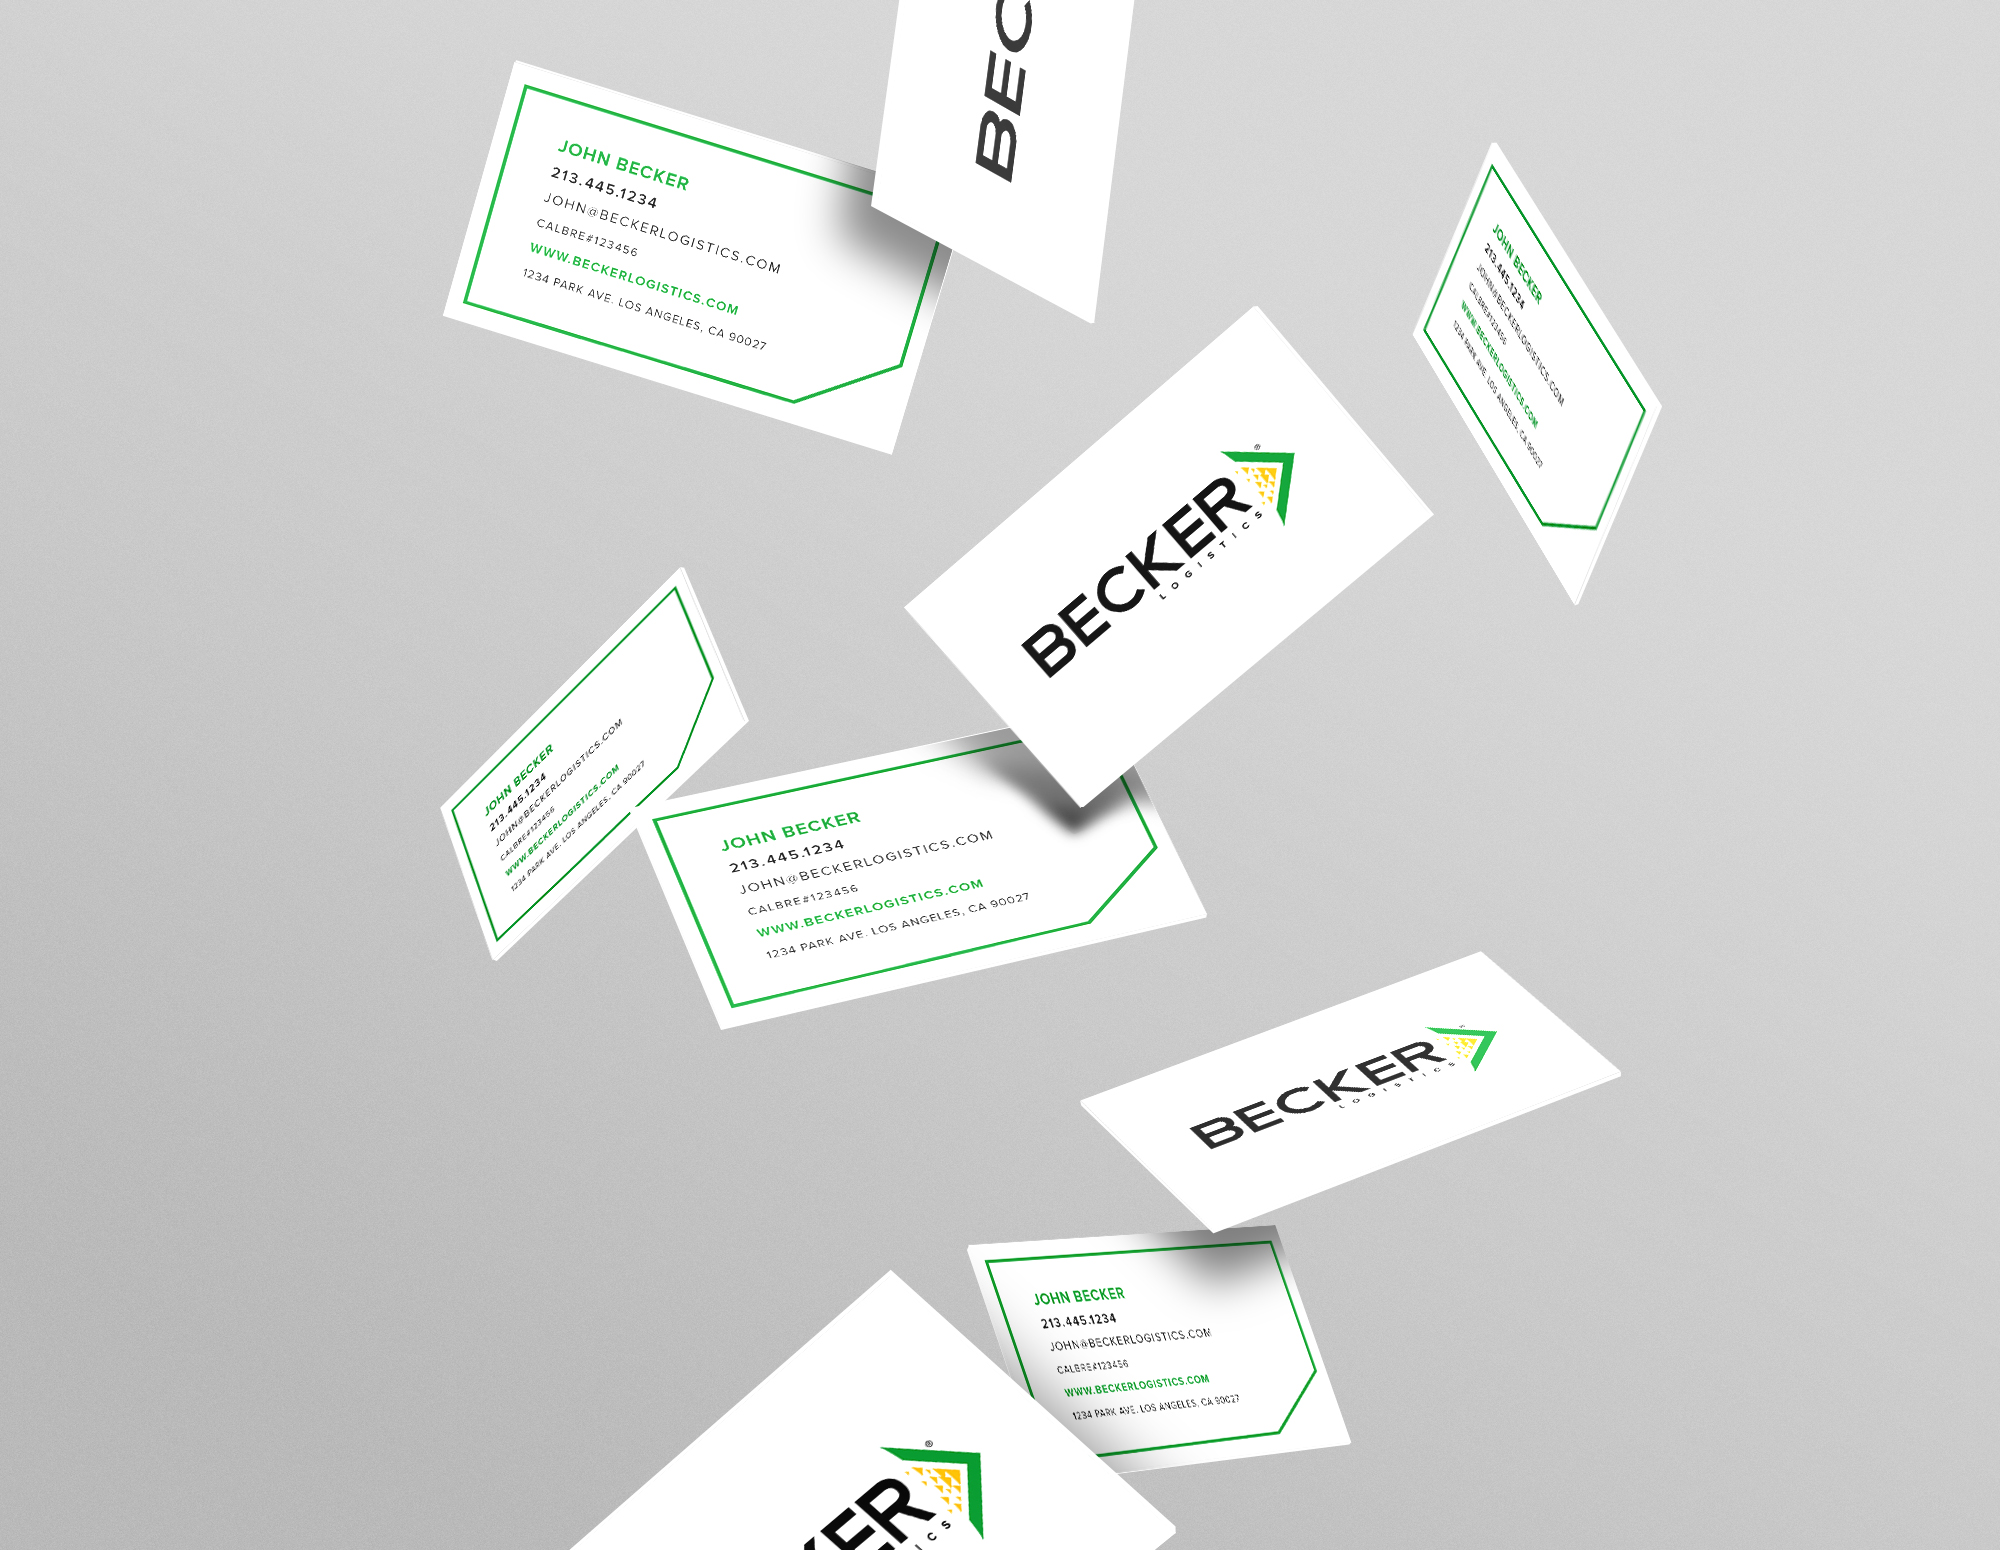 Becker Business Cards.jpg